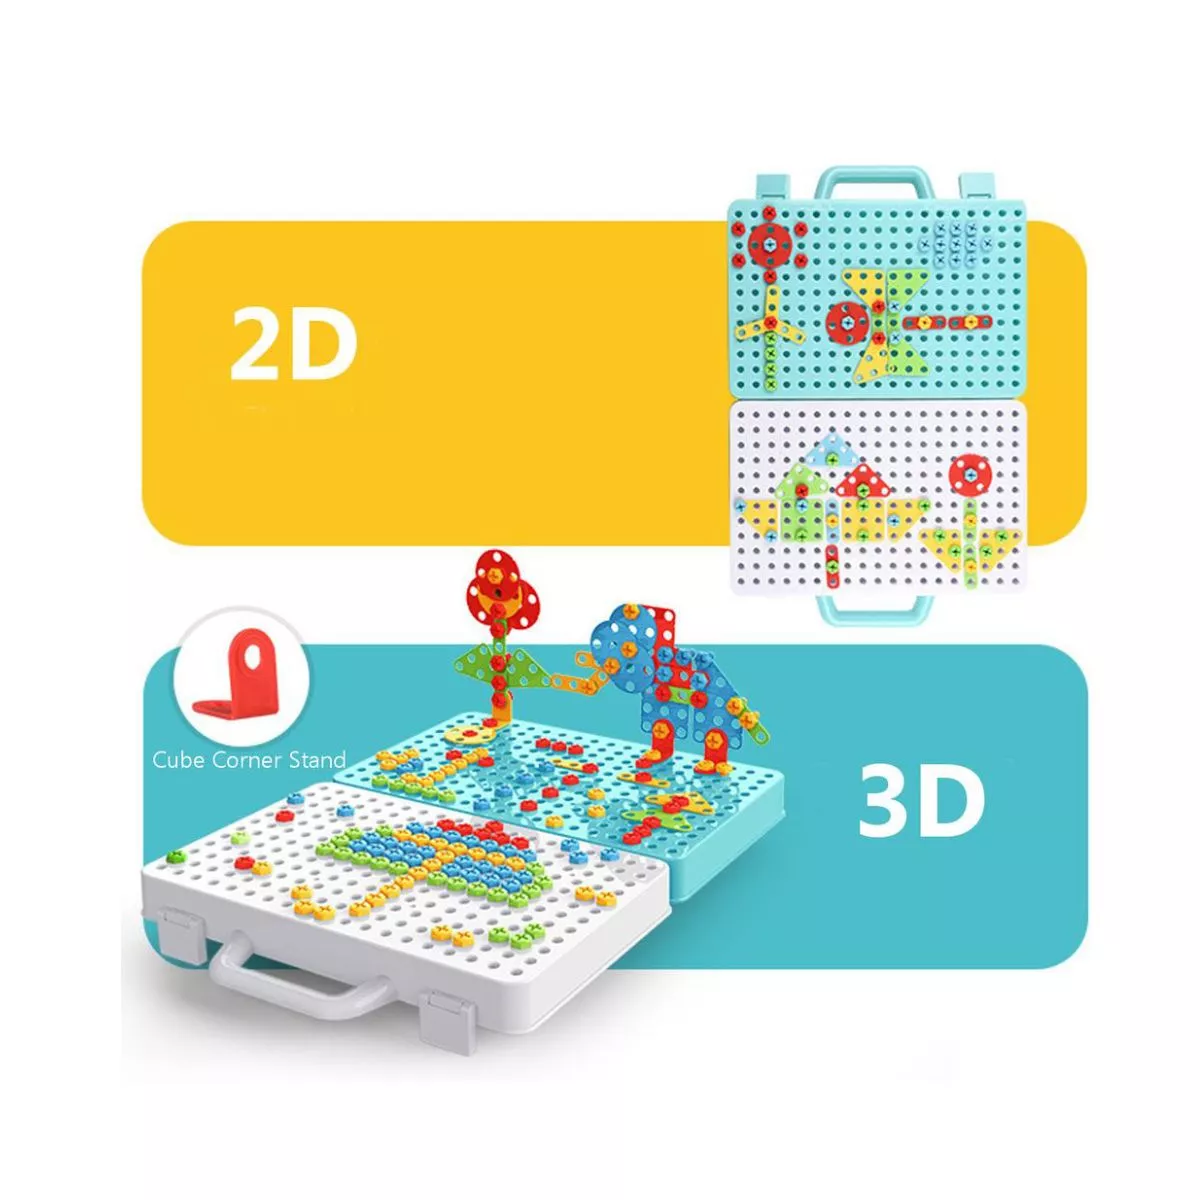 Jucarie educativa si interactiva STEM, set de constructie puzzle din ABS cu bormasina pentru inginerie 2D si 3D cu 237 piese, carcasa portabila, +3, WW2004 5